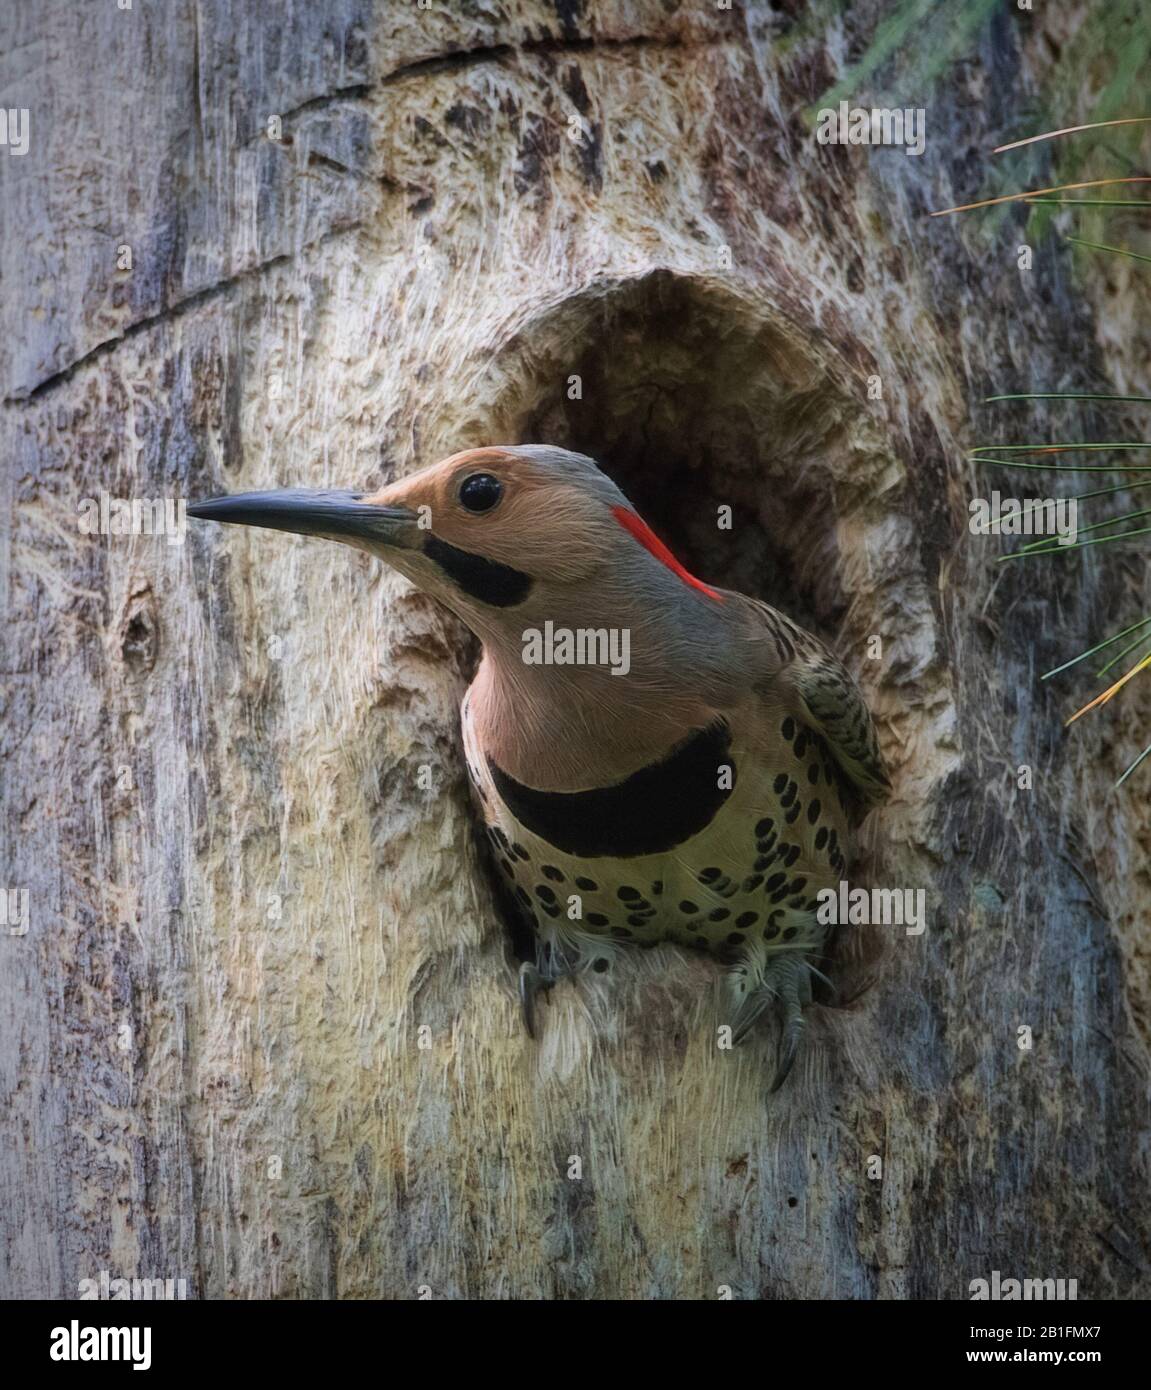 Pájaro carpintero Northern Flicker que se pega la cabeza fuera de su nido de agujero de árbol Foto de stock